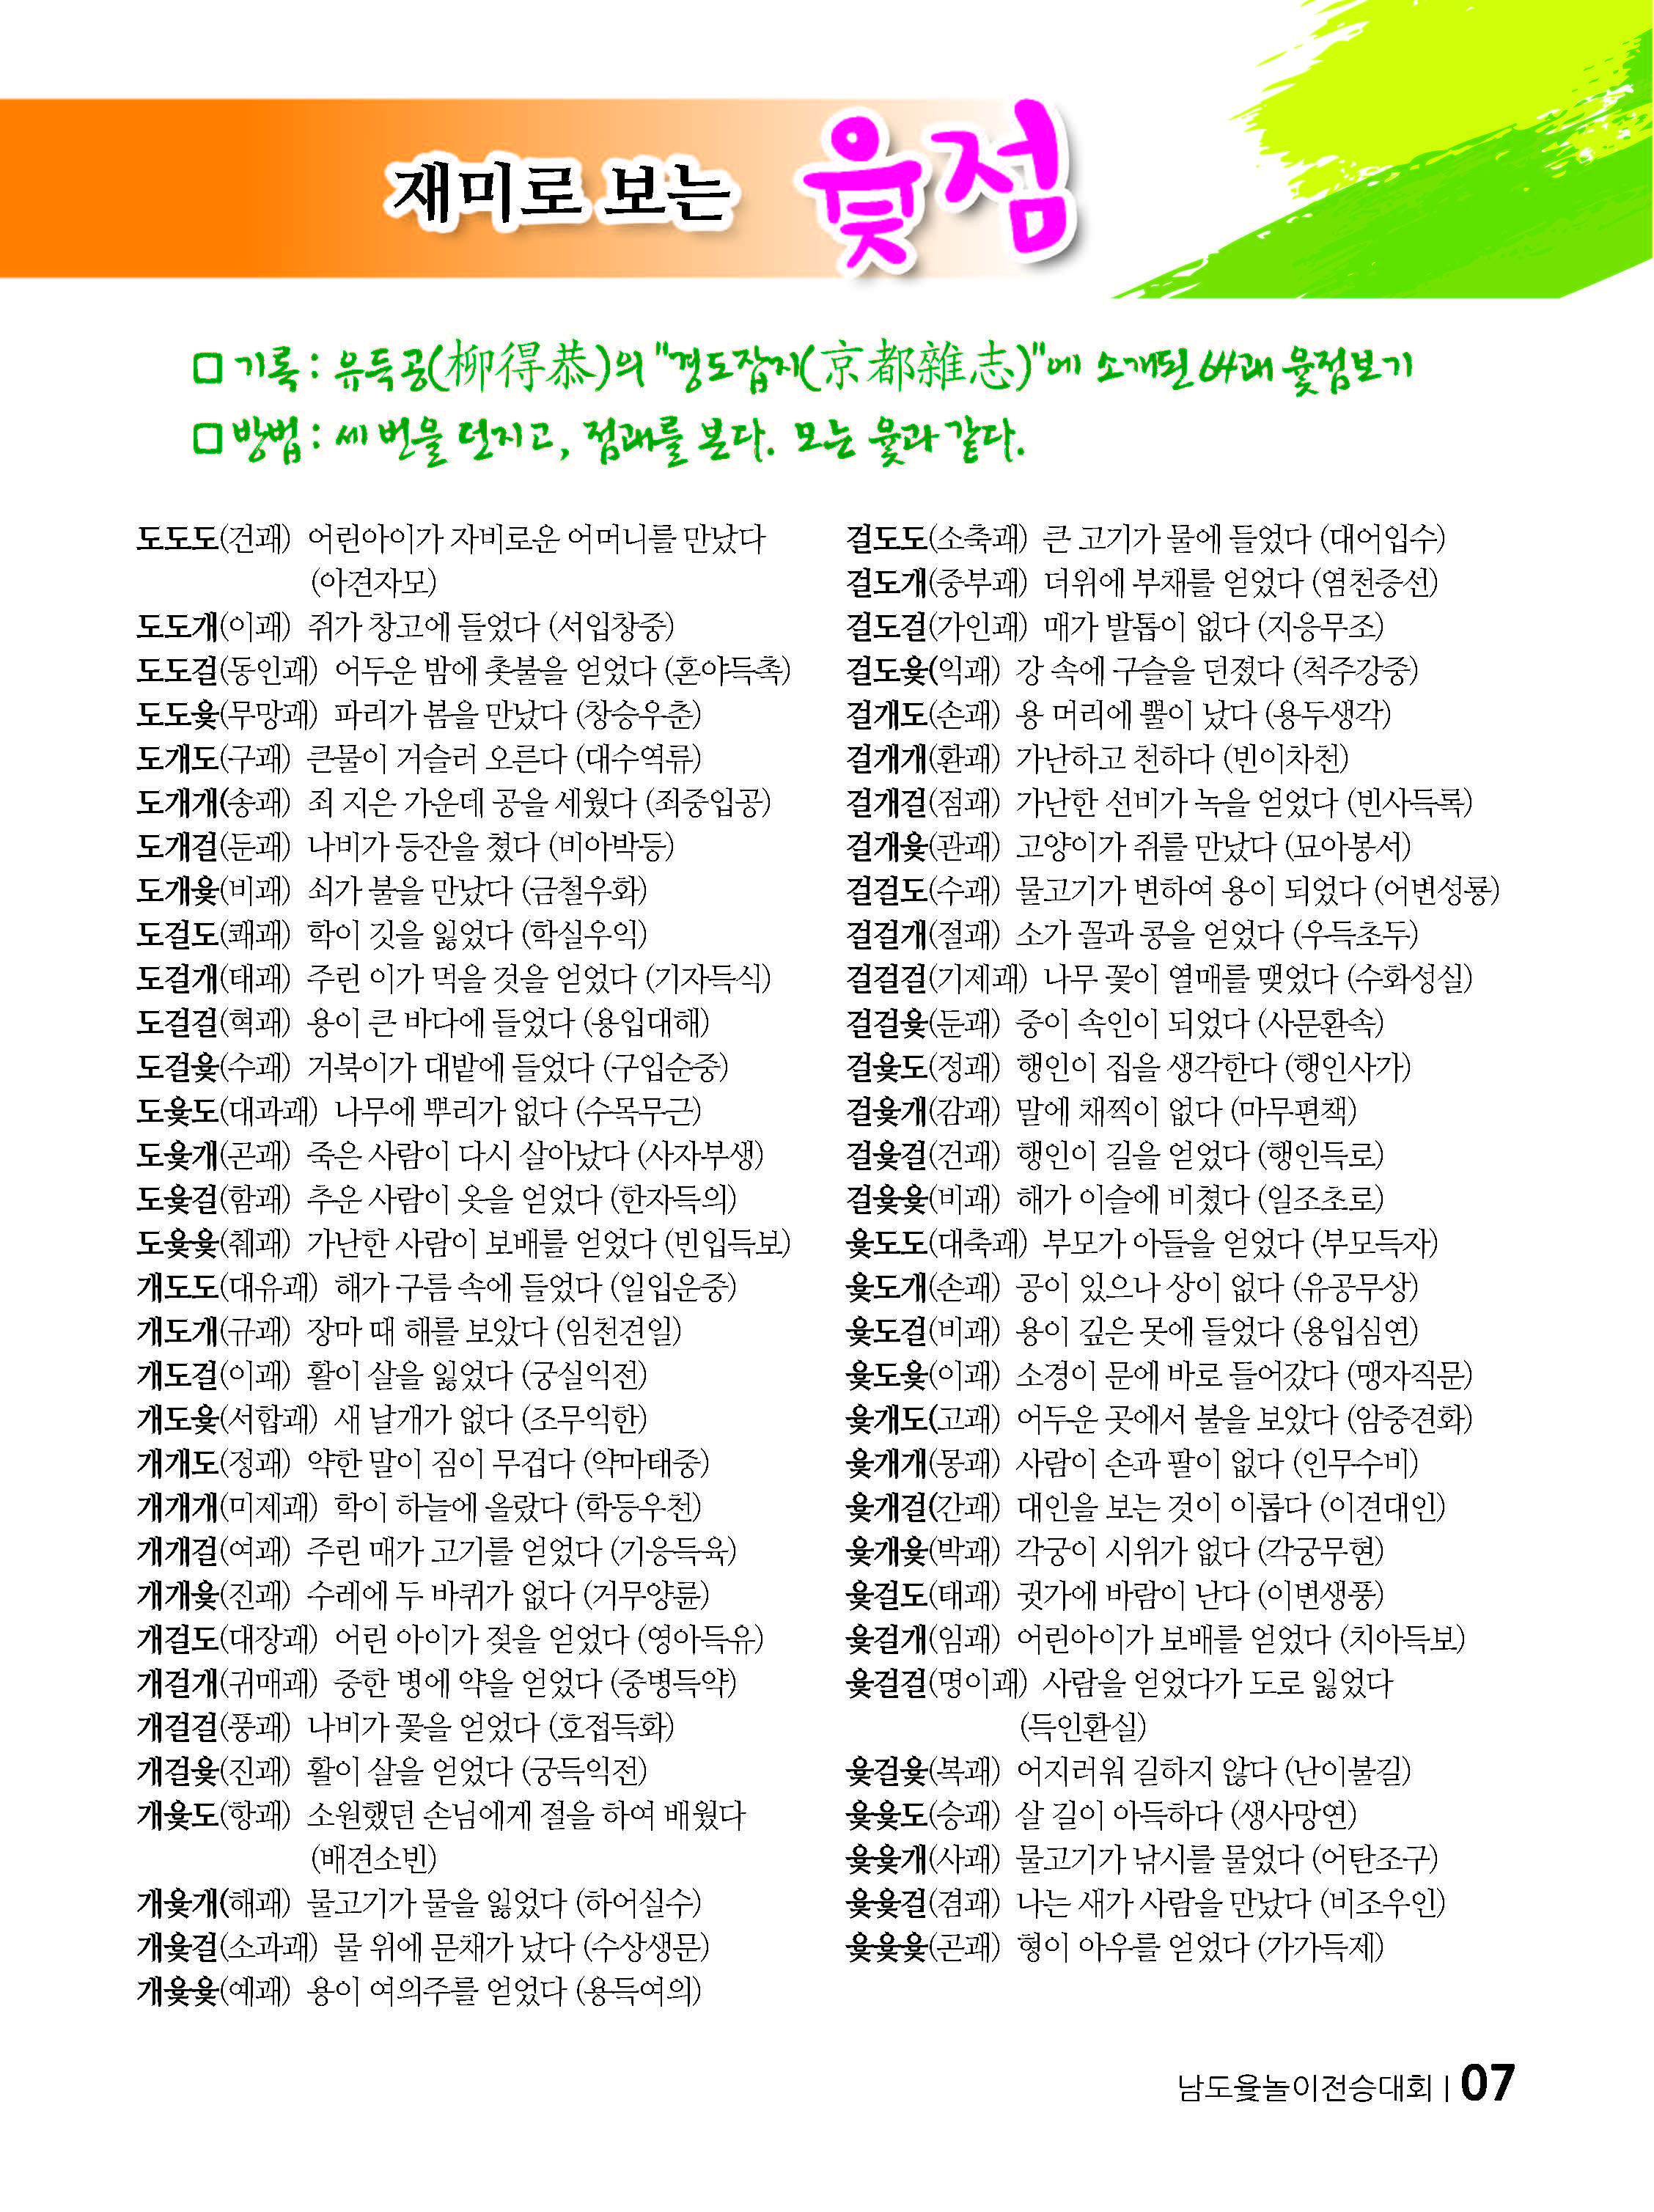 설날맞이~~ 제1회 남도윷놀이전승대회 보고 2 첨부#2